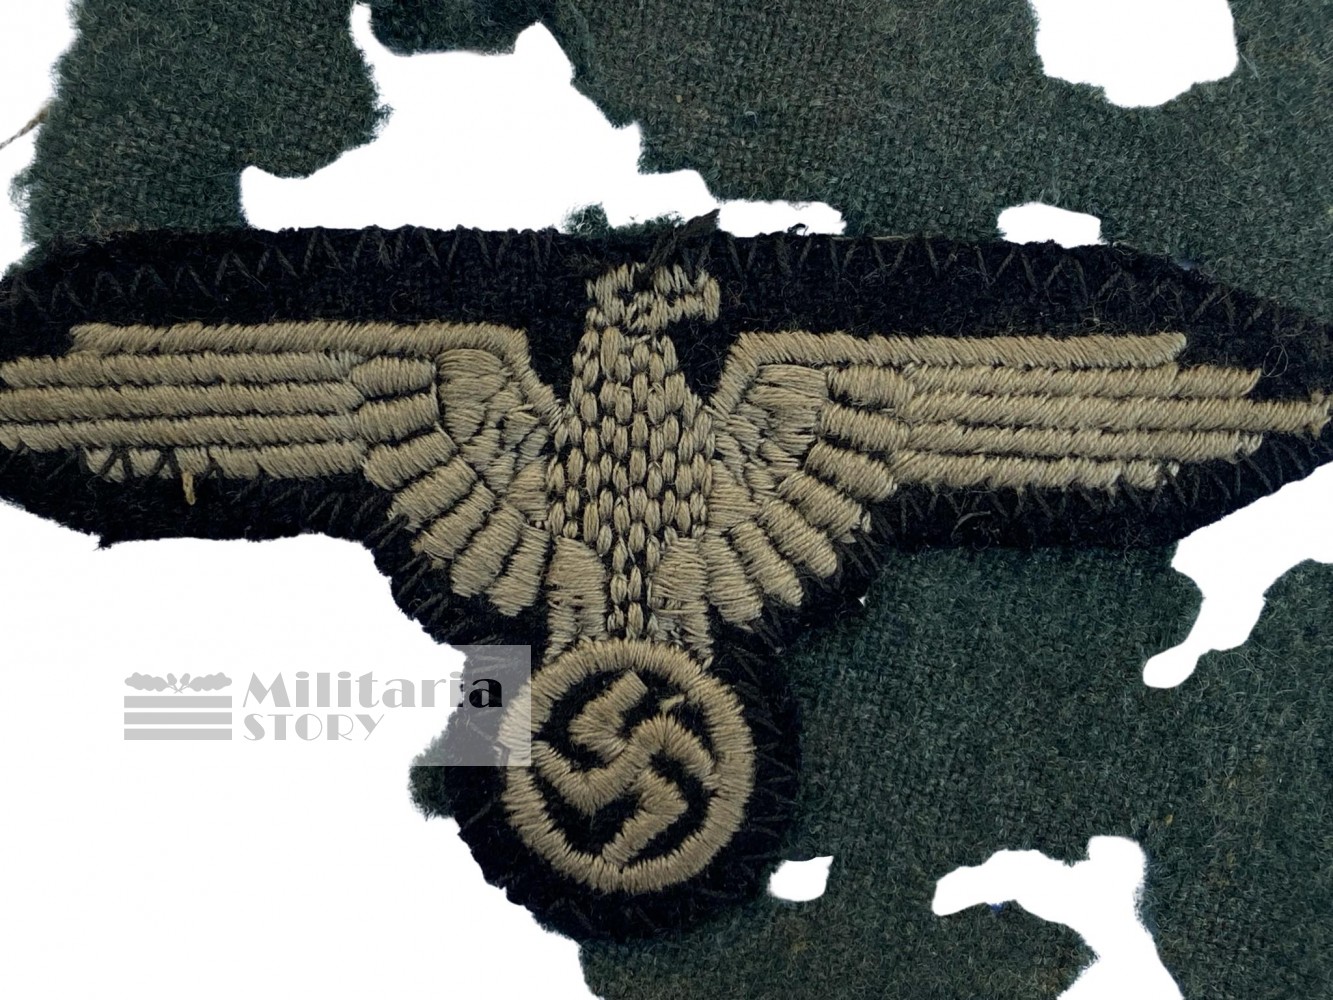 Cutoff SS-VT Early hammerhead eagle - Cutoff SS-VT Early hammerhead eagle: Third Reich Insignia